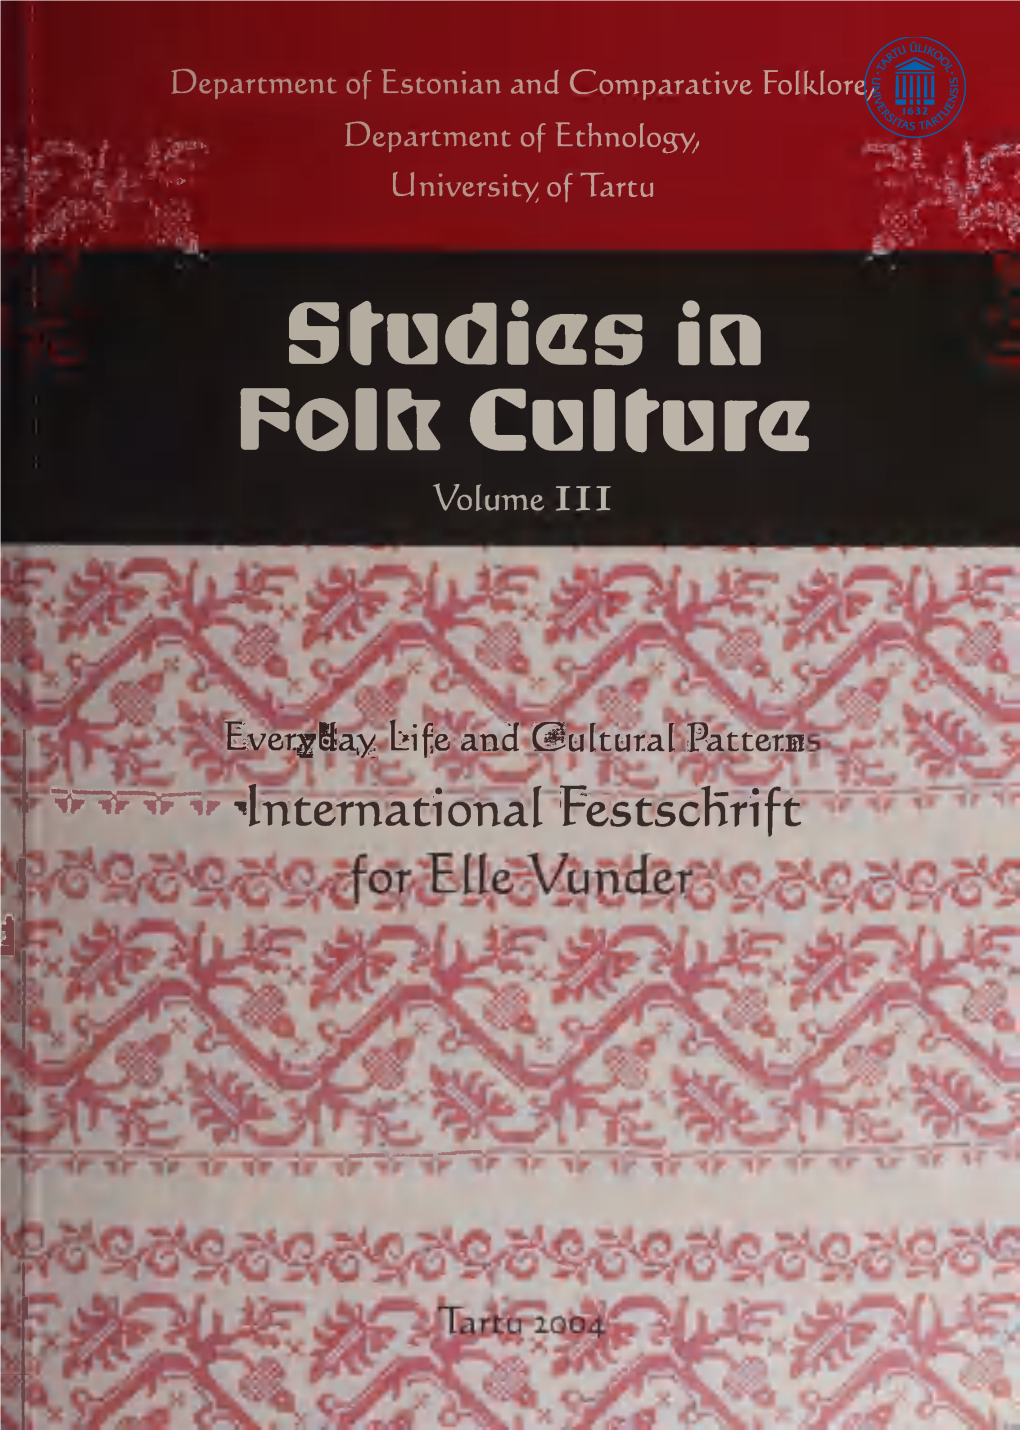 Stadias in Rolft Culture " "International Festschrift I